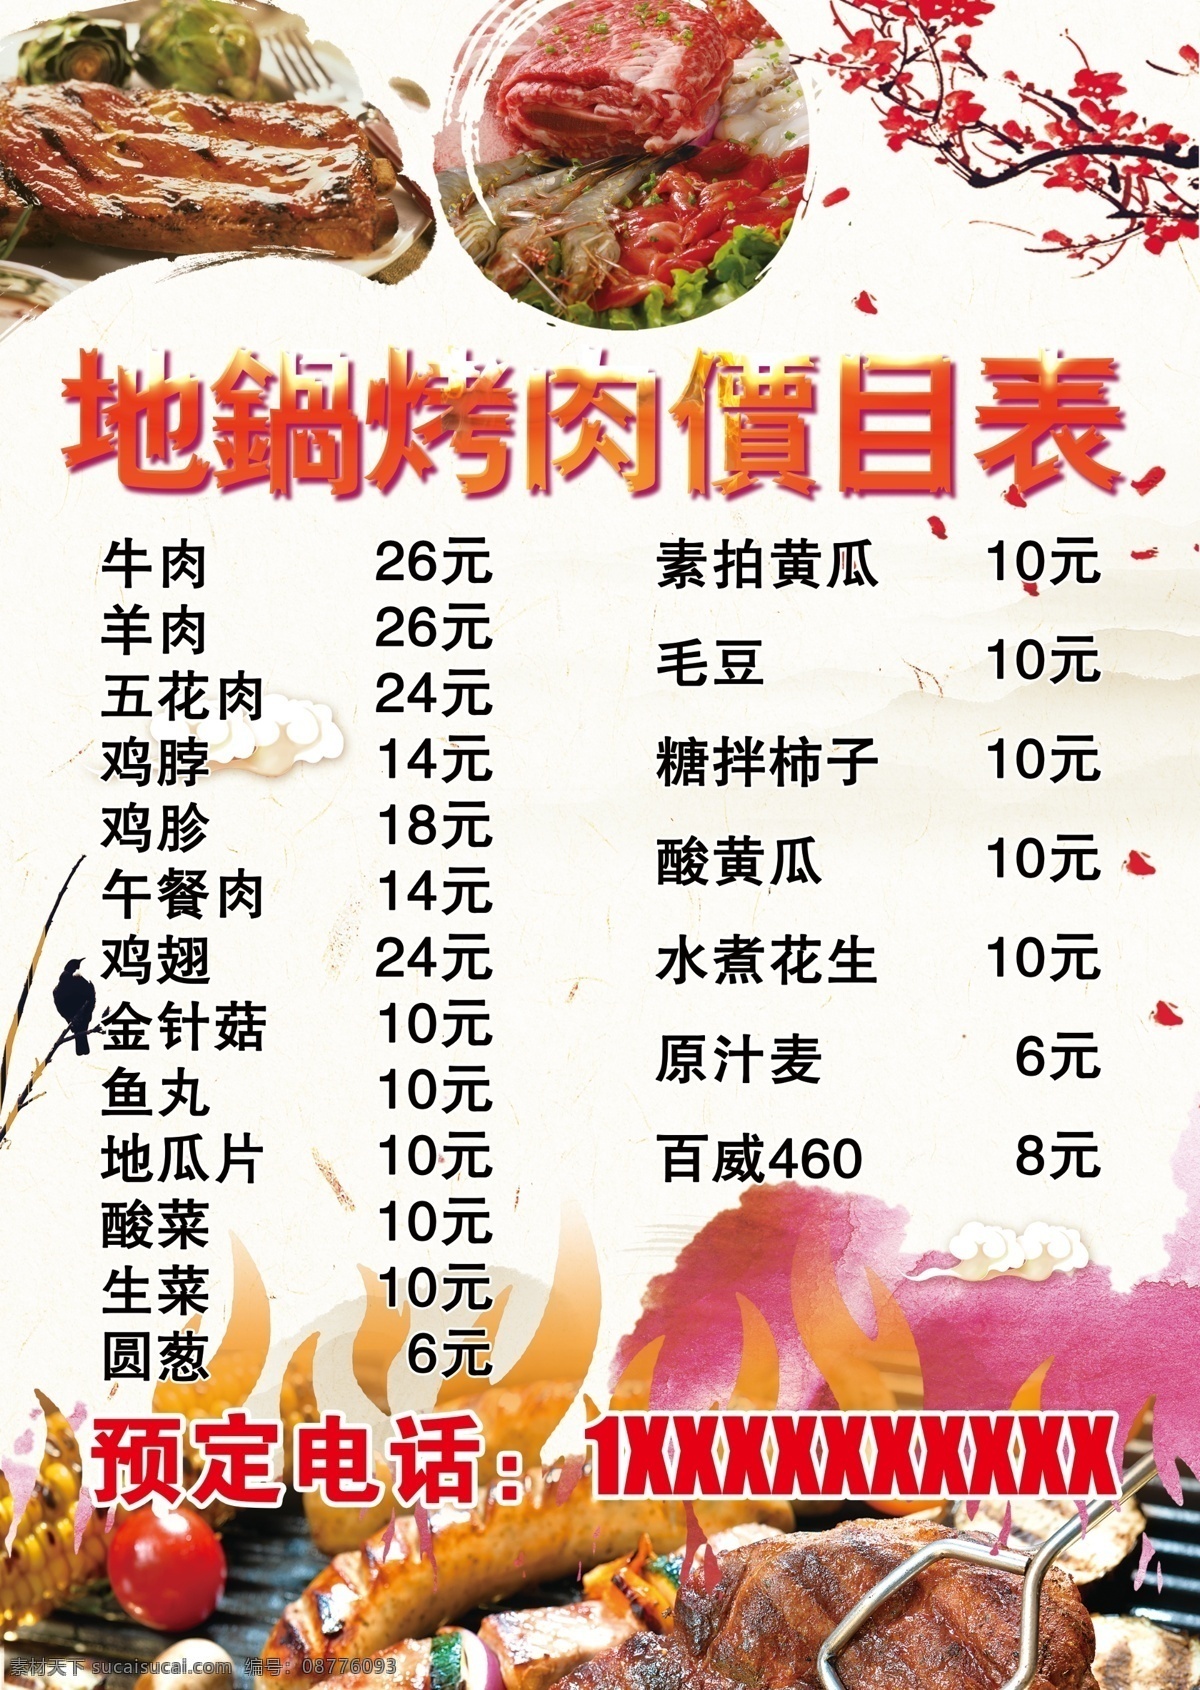 烤肉菜单 烤肉 菜单 梅花 火苗 中国风 小鸟 餐饮 美食 美味